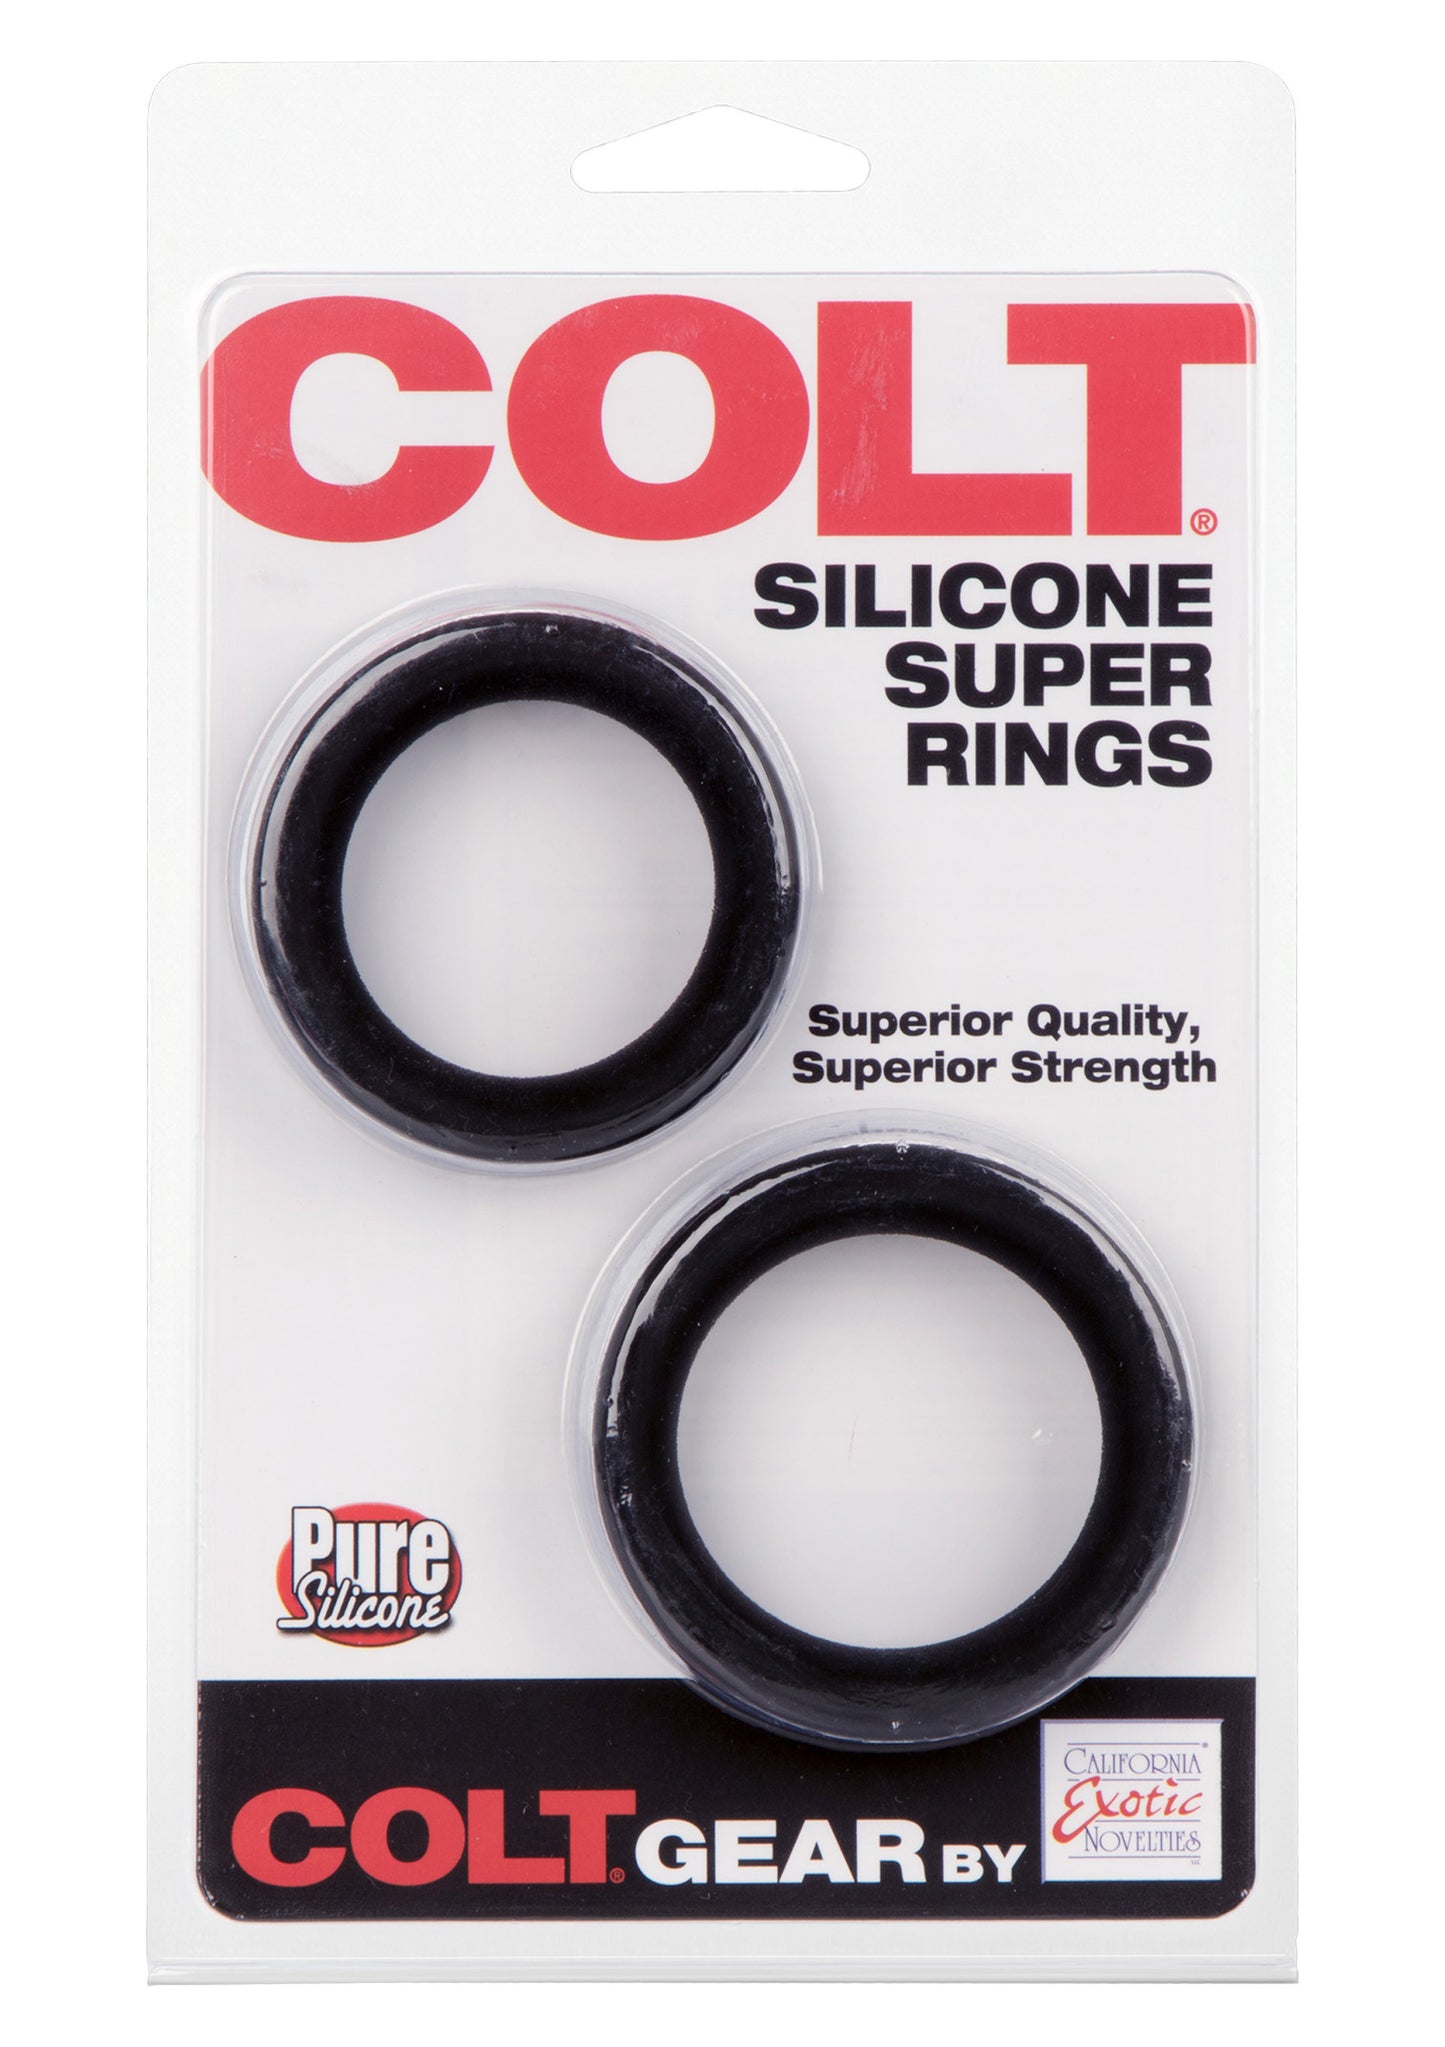 Anello fallico set COLT Silicone Super Rings